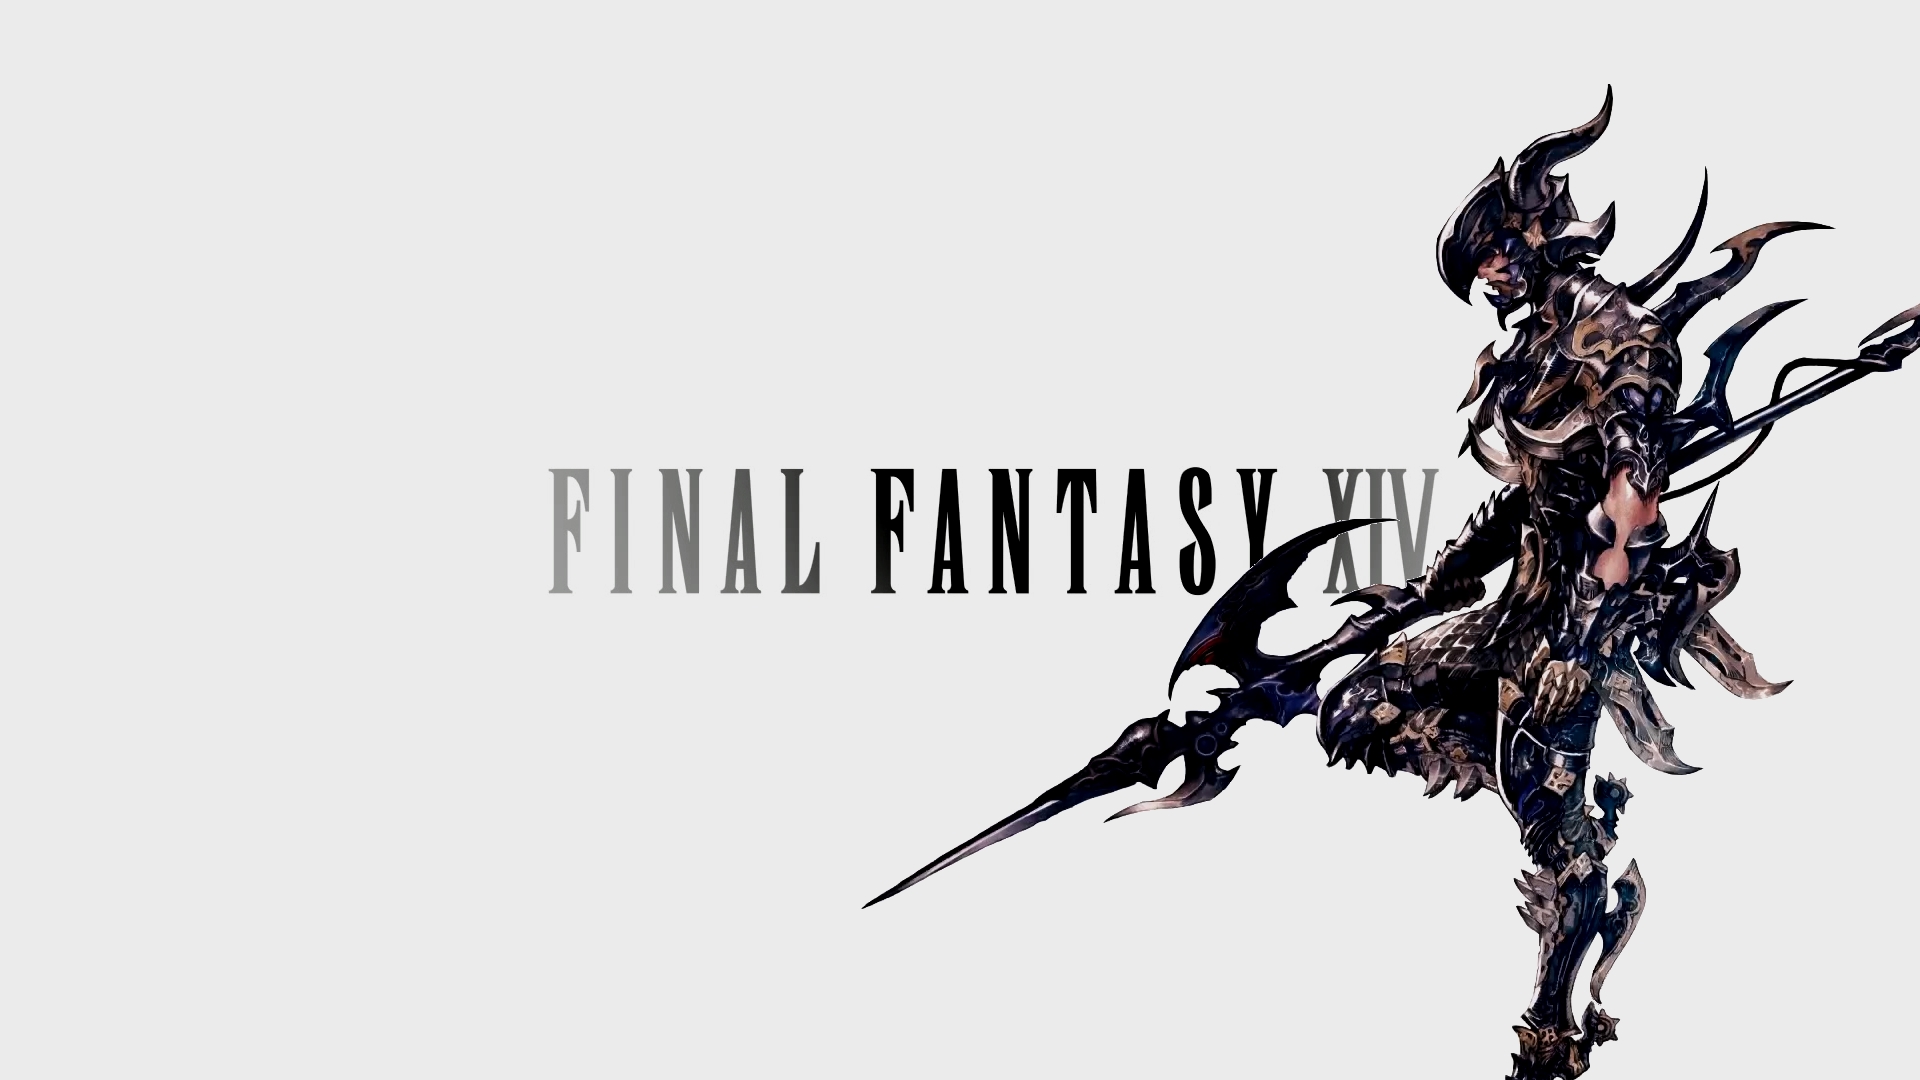 Final Fantasy XIV: A Realm Reborn Art